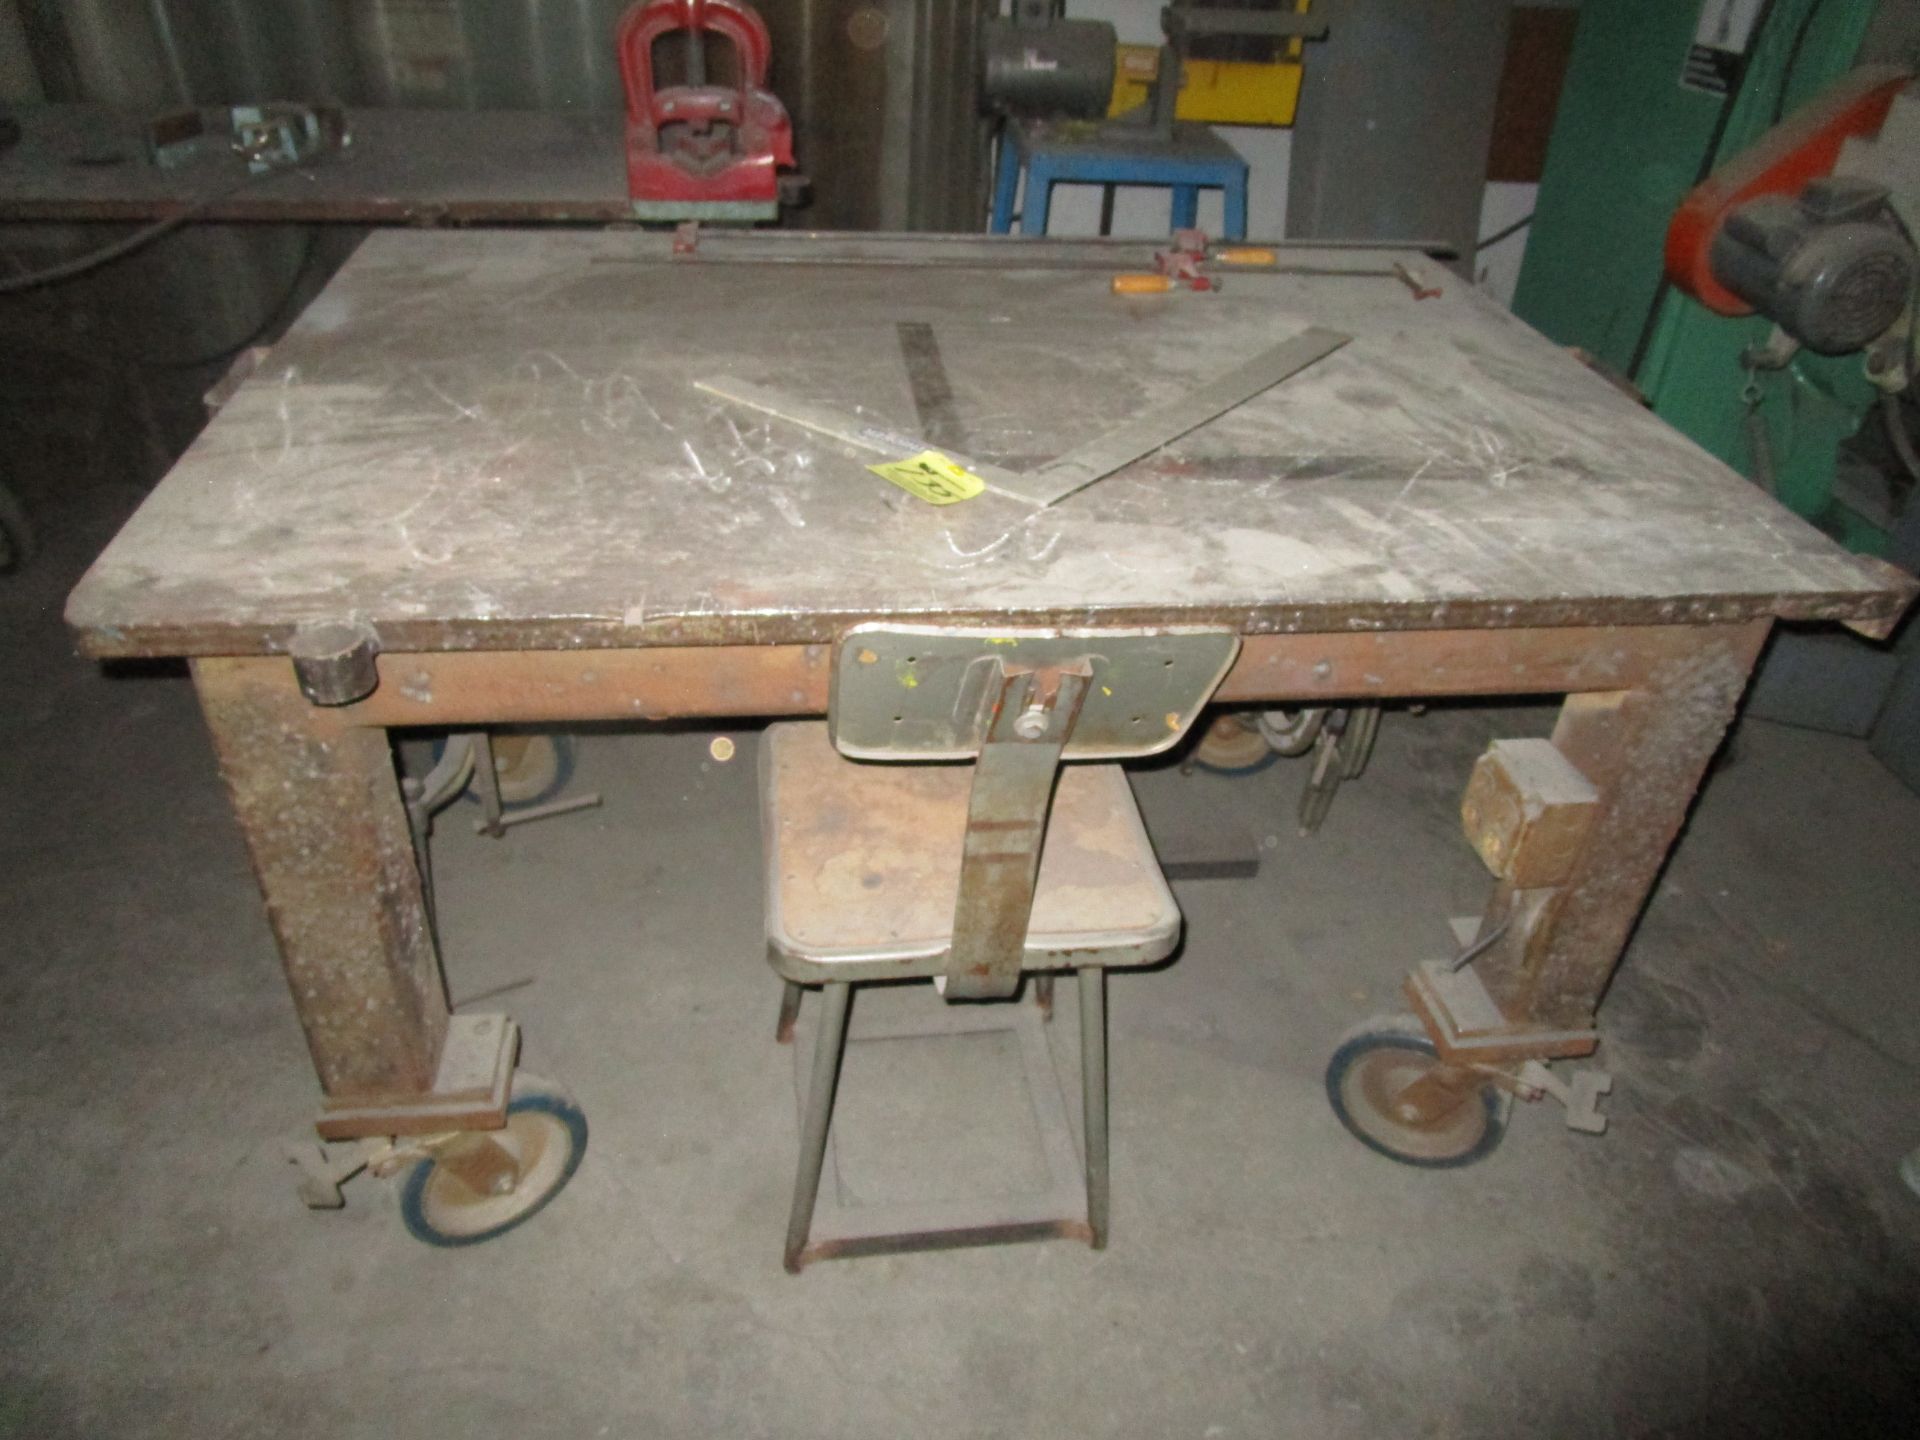 LOT 38.5" x 54" Steel Table, 25" x 63" Steel Table, (2) Vises - Image 2 of 2